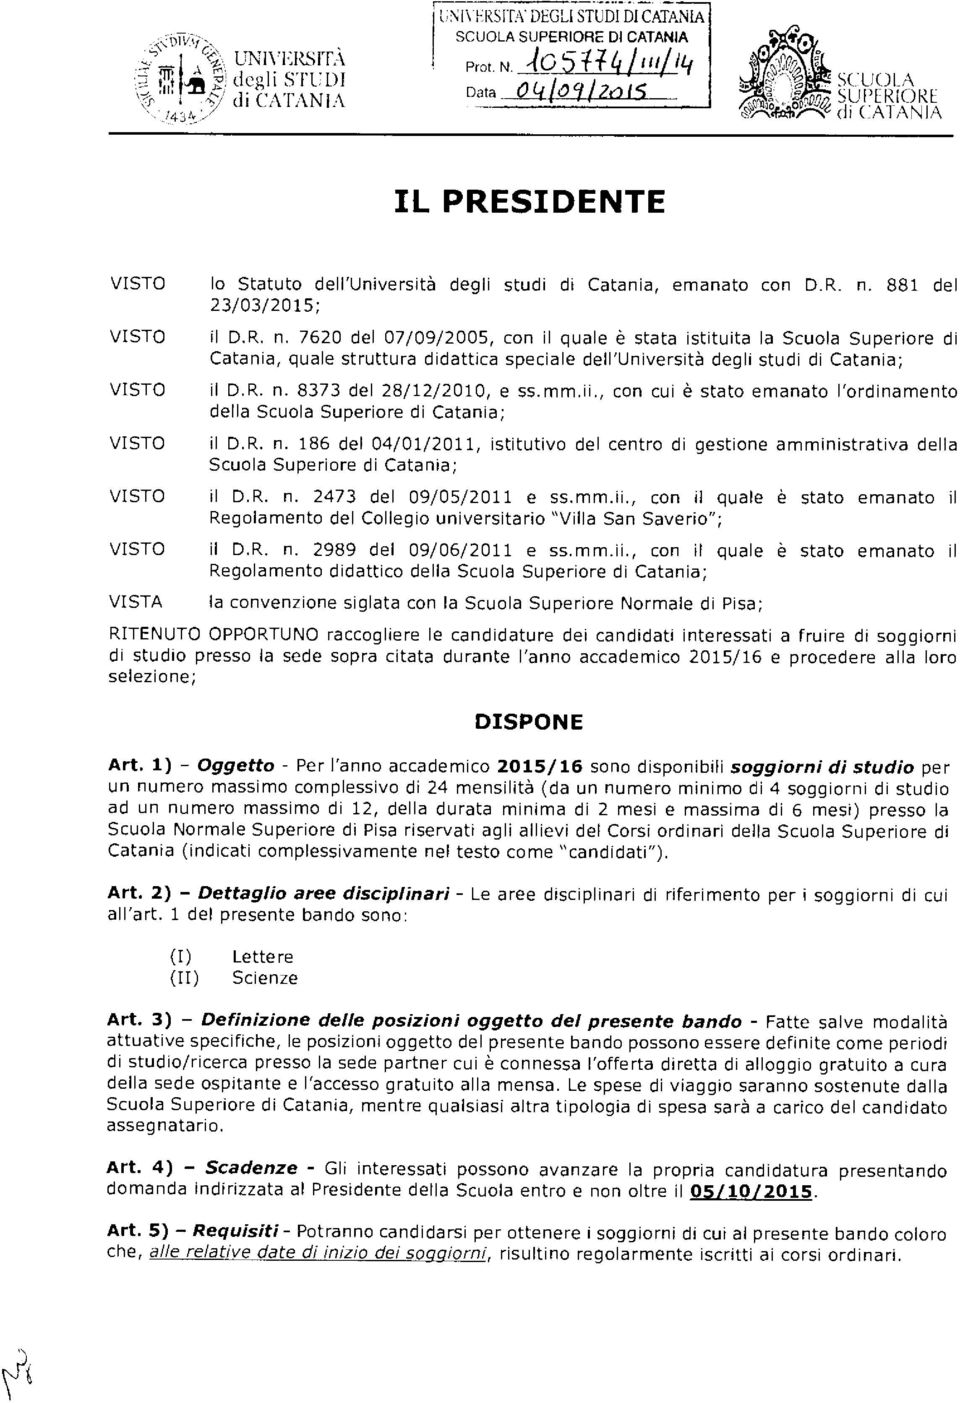 881 del 23/03/2015; il D.R. n. 7620 del 07/09/2005, con il quale è stata istituita la Scuola Superiore di Catania, quale struttura didattica speciale dell'università degli studi di Catania; il D.R. n. 8373 del 28/12/2010, e ss.